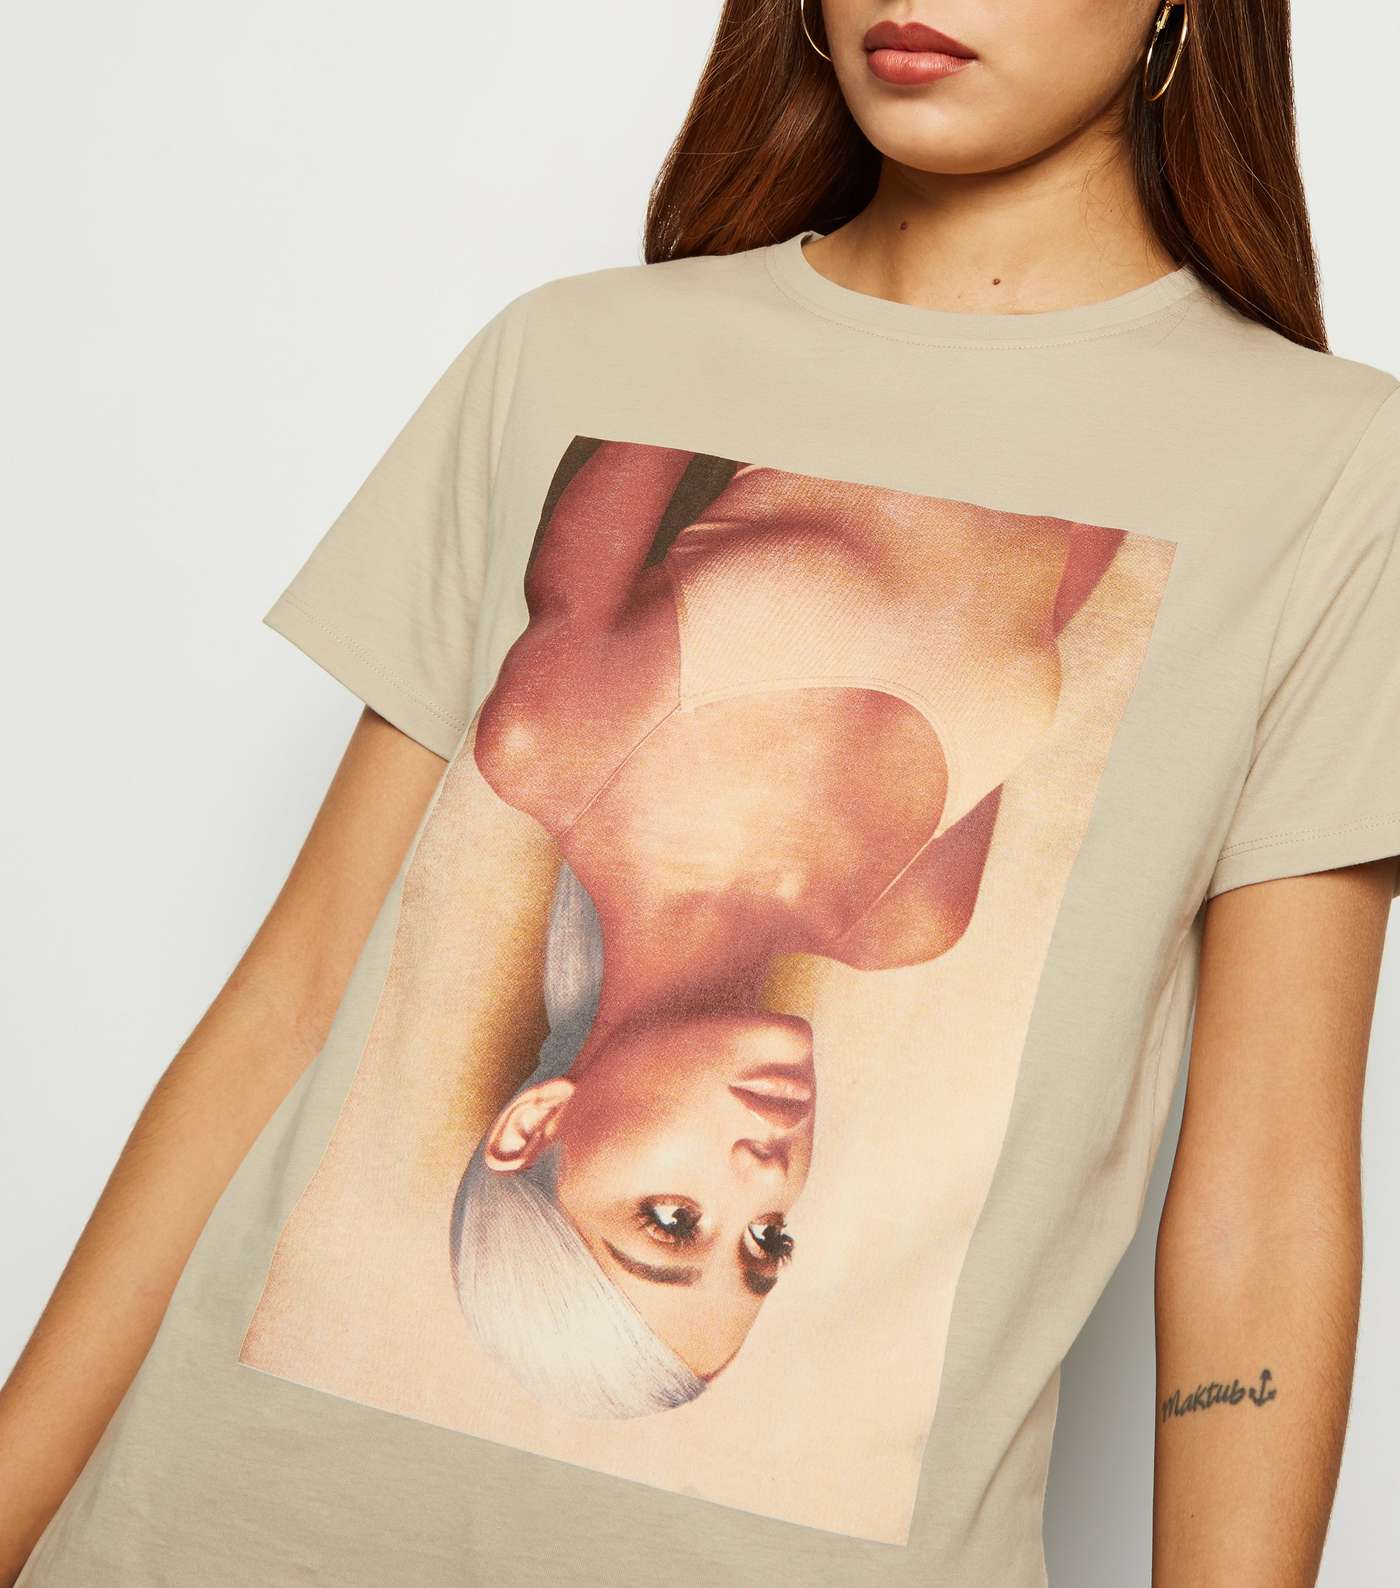 Stone Ariana Grande Sweetener Album T-Shirt Image 5